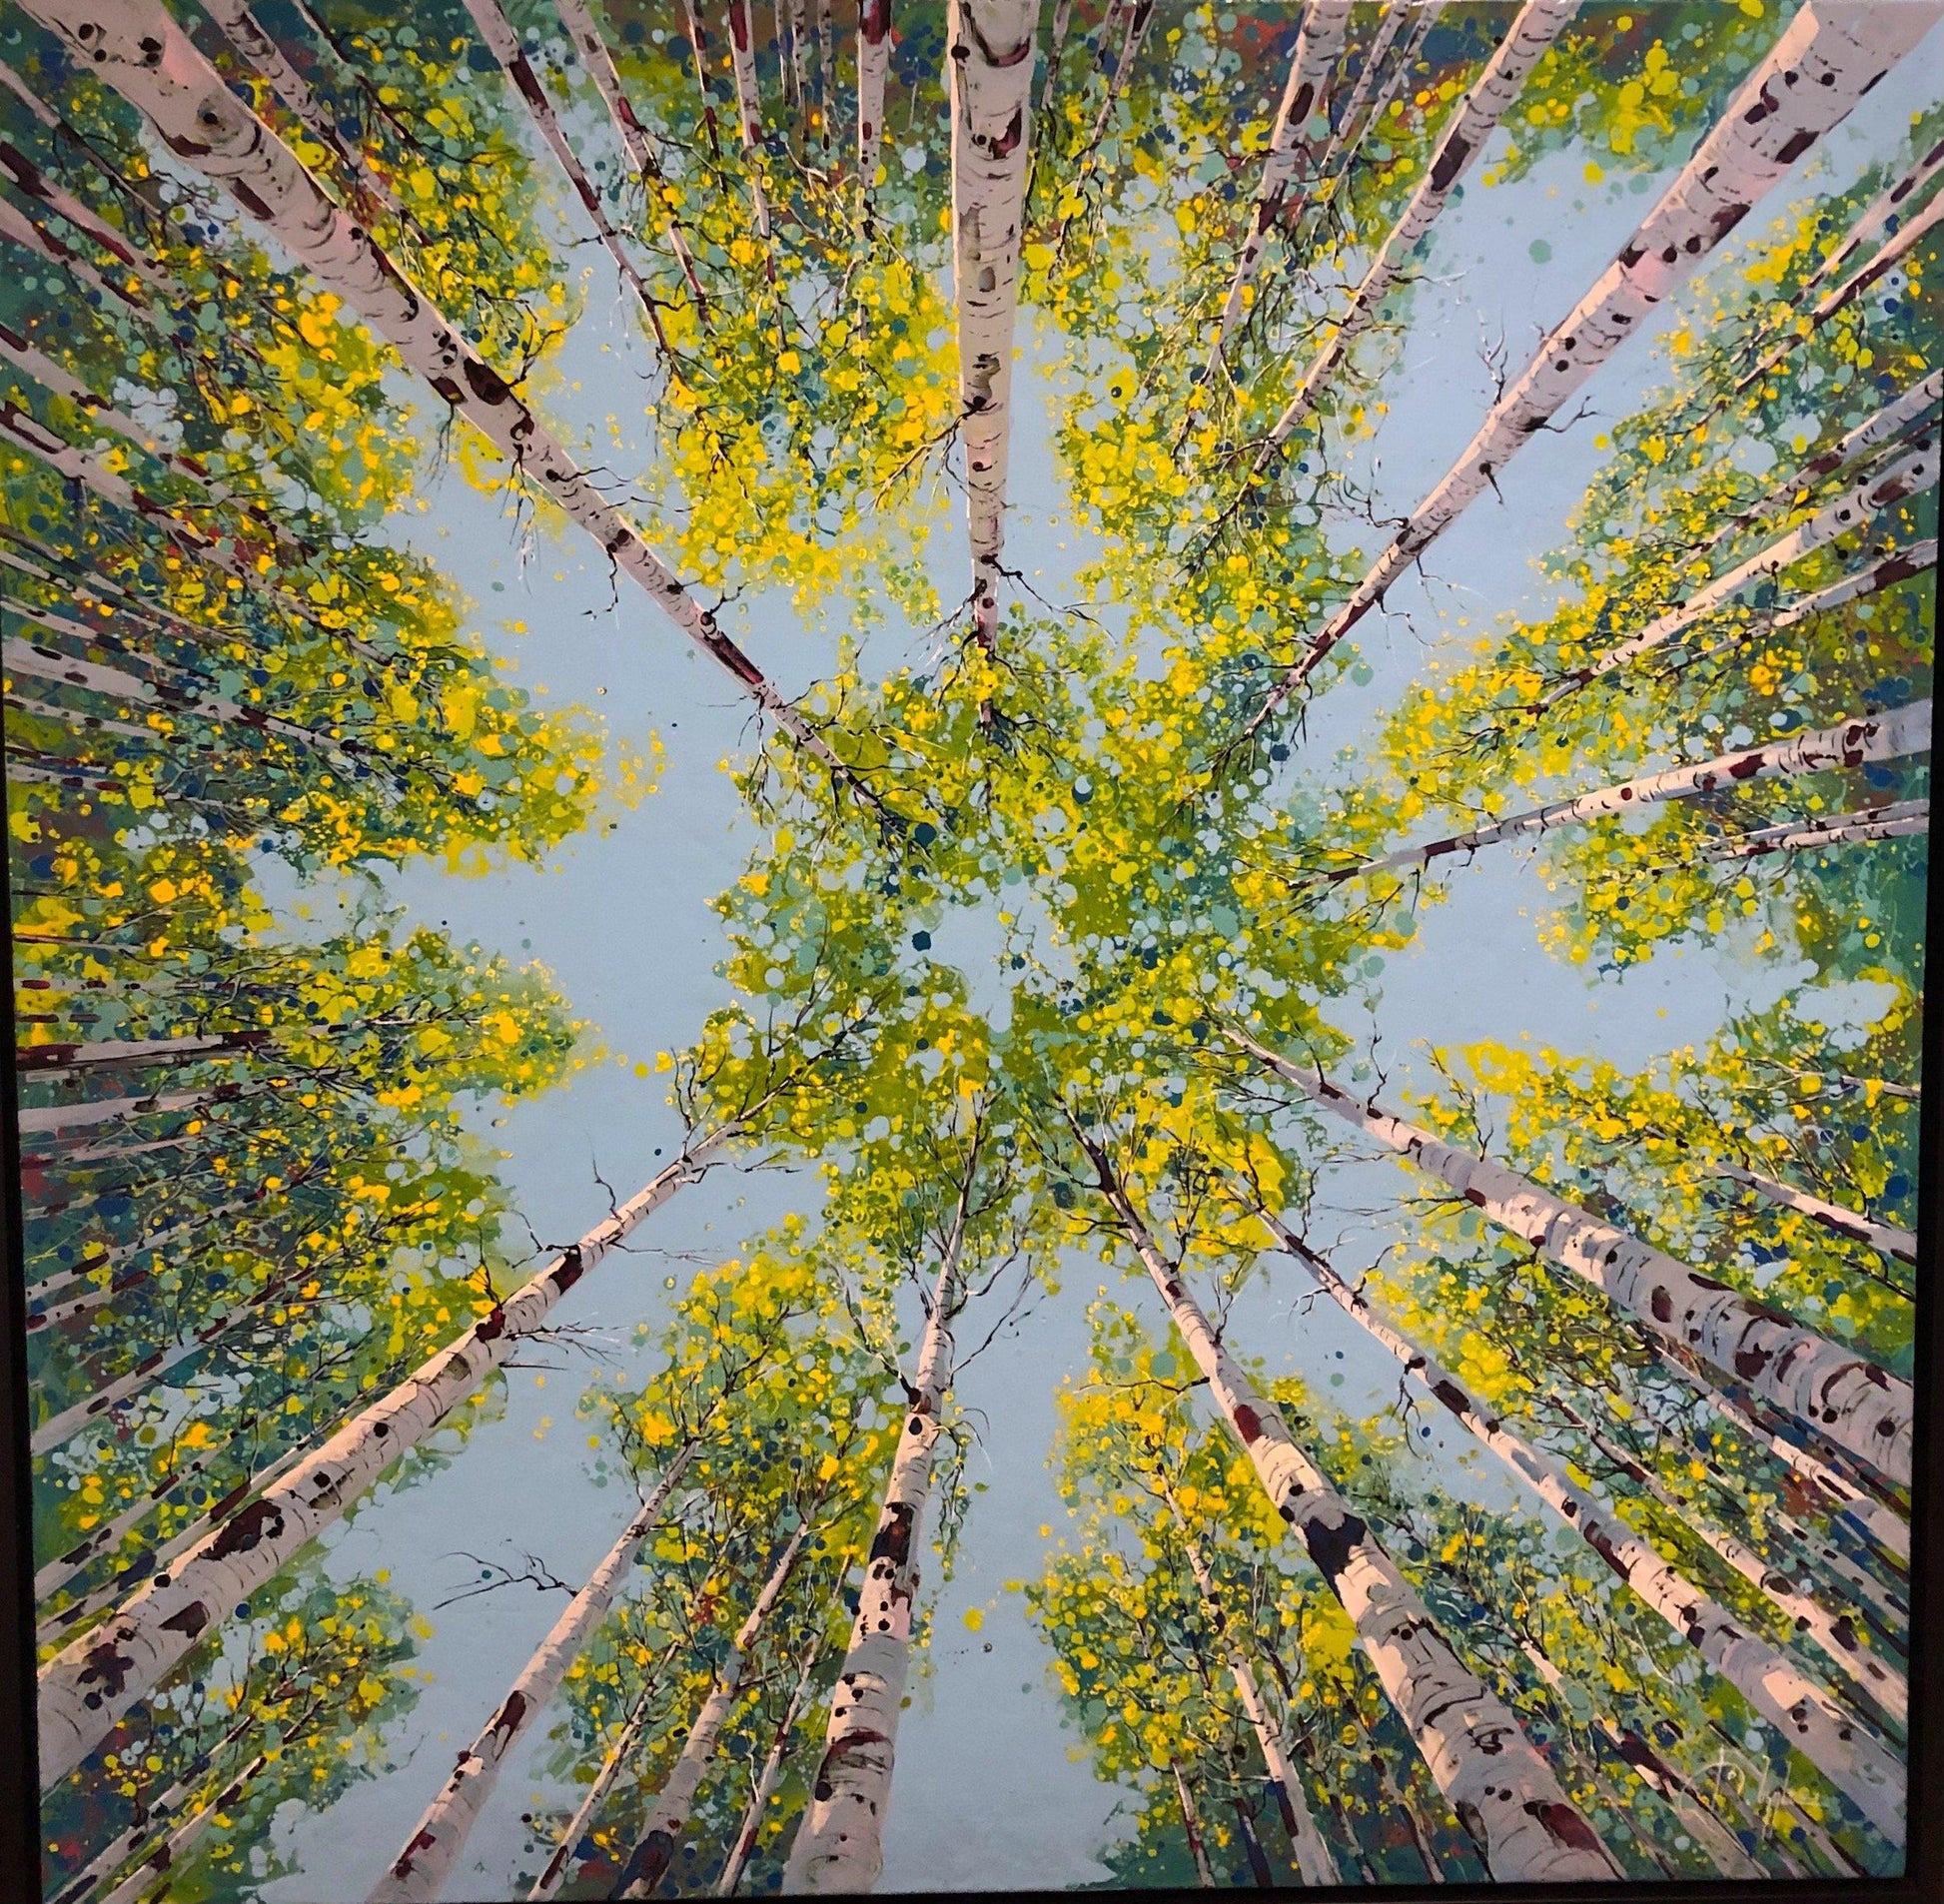 Summer Upward-Painting-Roberto Ugalde-Sorrel Sky Gallery